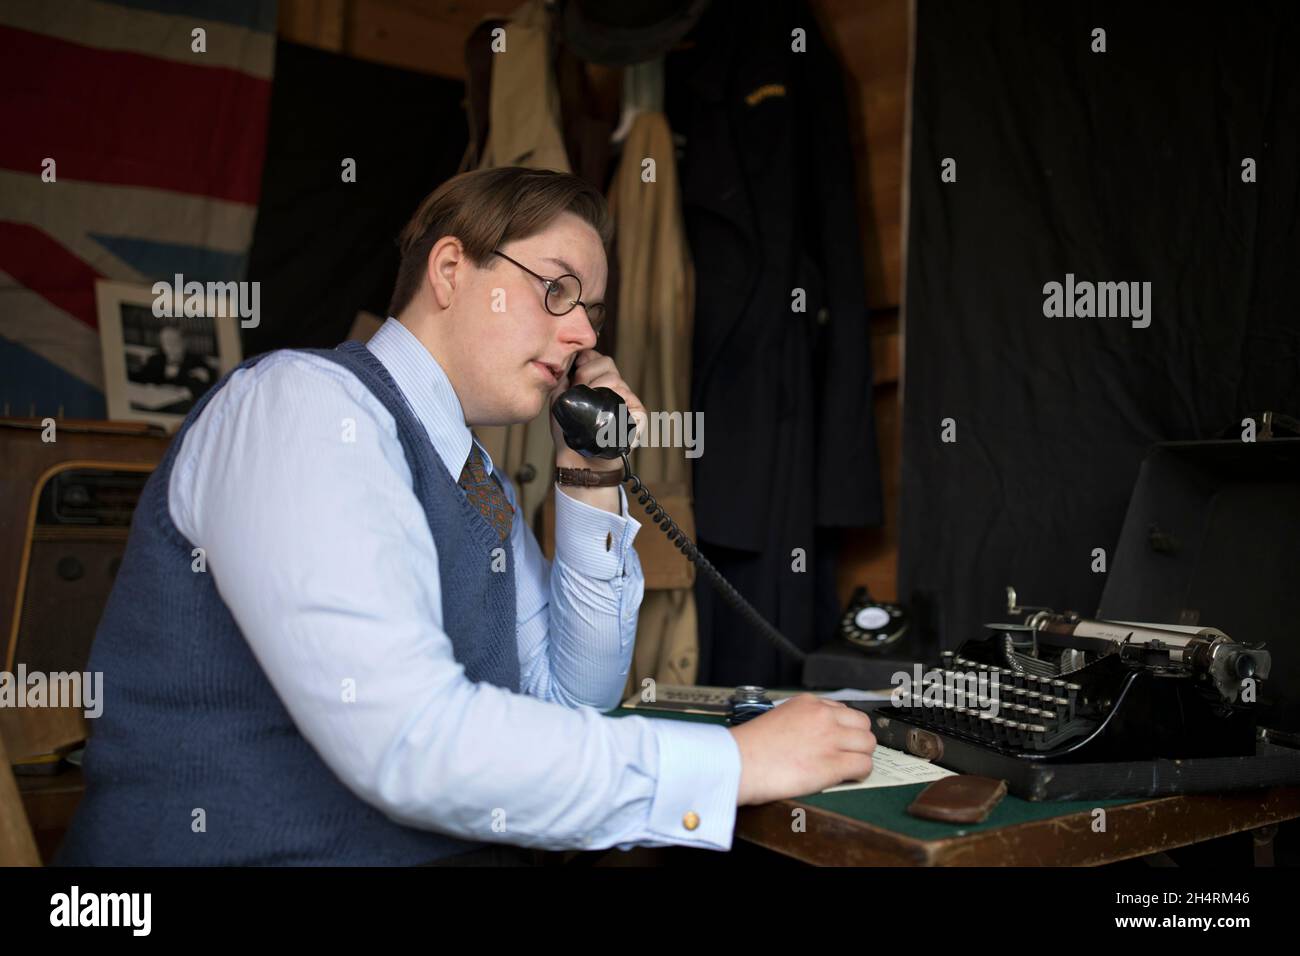 Giovane uomo civilano al telefono in ruolo volontario come ARP warden nel 1940 in Gran Bretagna tempo di guerra. Le funzioni ARP potrebbero essere amministrative e amministrative. Foto Stock